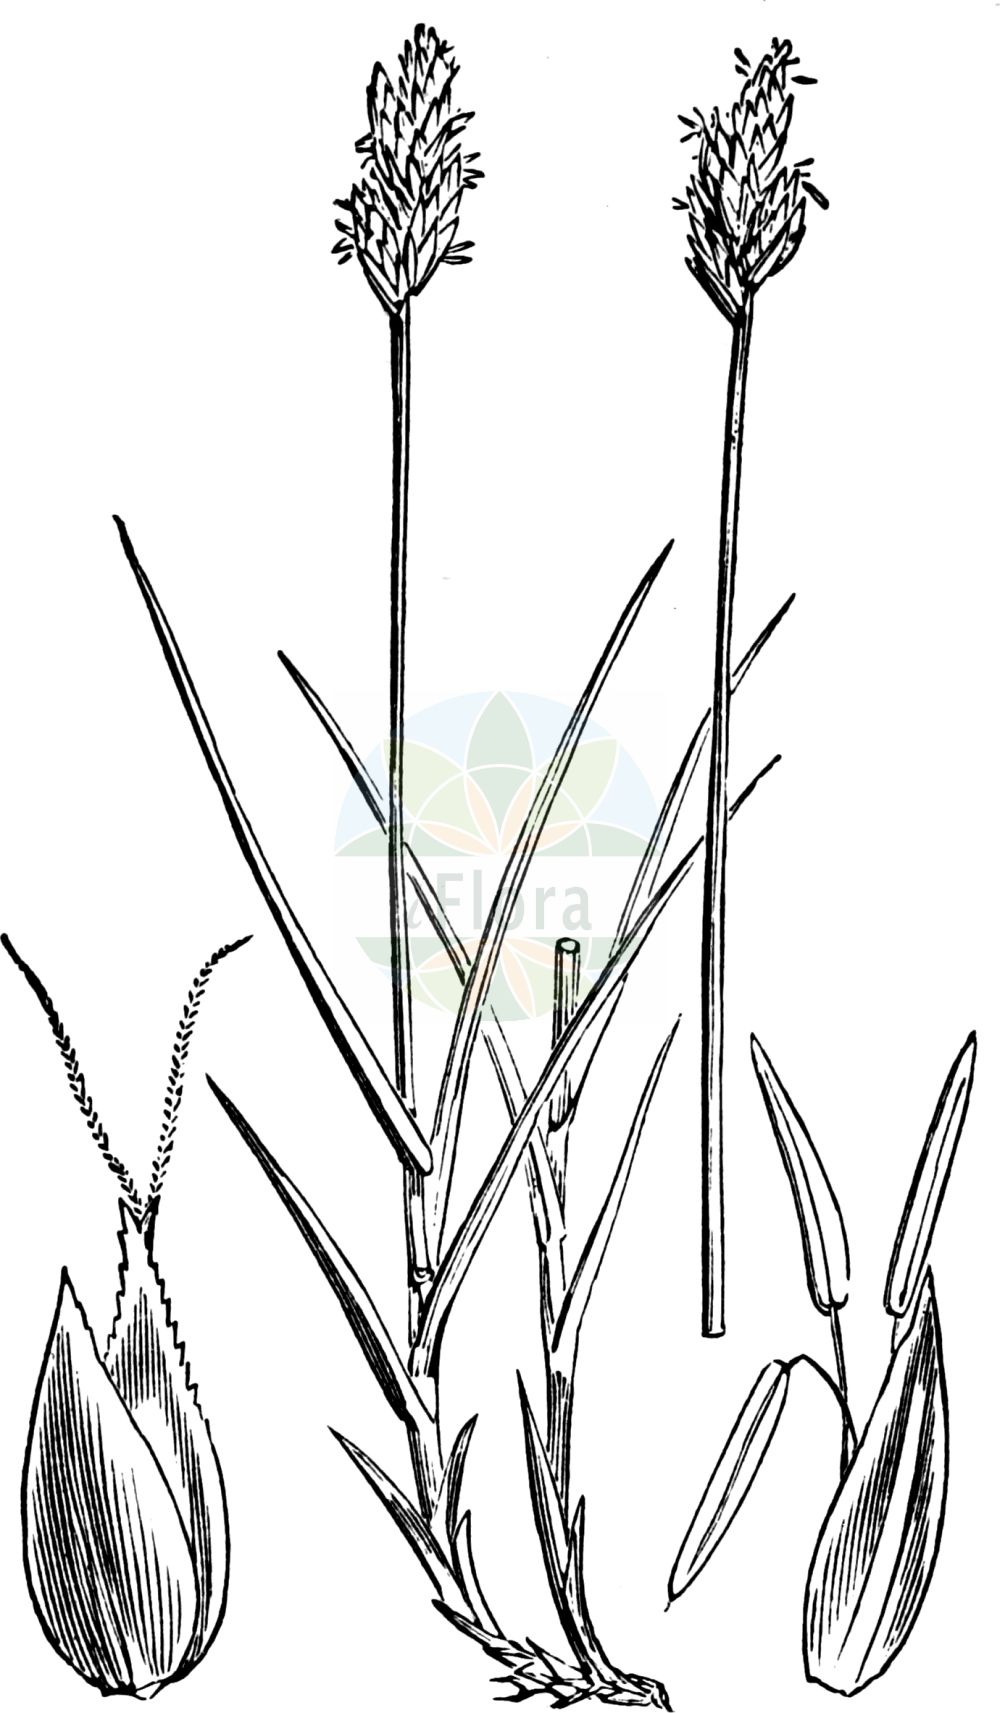 Historische Abbildung von Carex leporina (Hasenpfoten-Segge - Oval Sedge). Das Bild zeigt Blatt, Bluete, Frucht und Same. ---- Historical Drawing of Carex leporina (Hasenpfoten-Segge - Oval Sedge). The image is showing leaf, flower, fruit and seed.(Carex leporina,Hasenpfoten-Segge,Oval Sedge,Carex argyroglochin,Carex leporina,Carex ovalis,Carex sicula,Vignea ovalis,Hasenpfoten-Segge,Hasenfuss-Segge,Oval Sedge,Hare's-foot Sedge,Eggbract Sedge,Carex,Segge,Sedge,Cyperaceae,Sauergräser,Sedge family,Blatt,Bluete,Frucht,Same,leaf,flower,fruit,seed,Fitch et al. (1880))